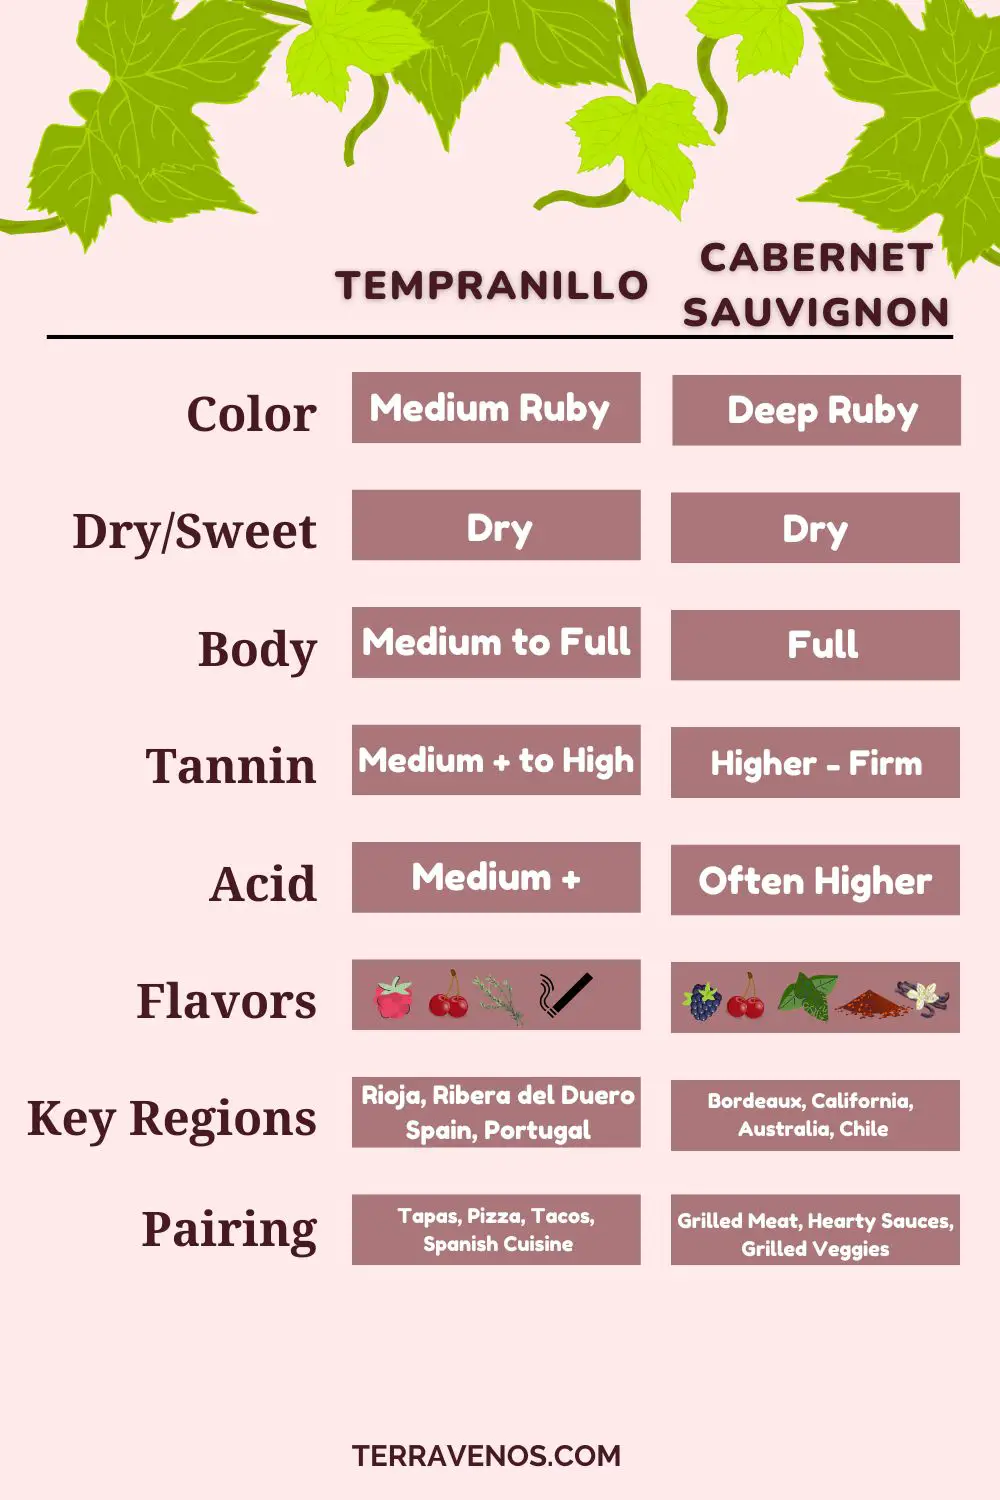 tempranillo-vs-cabernet-sauvignon-wine-comparison-infographic